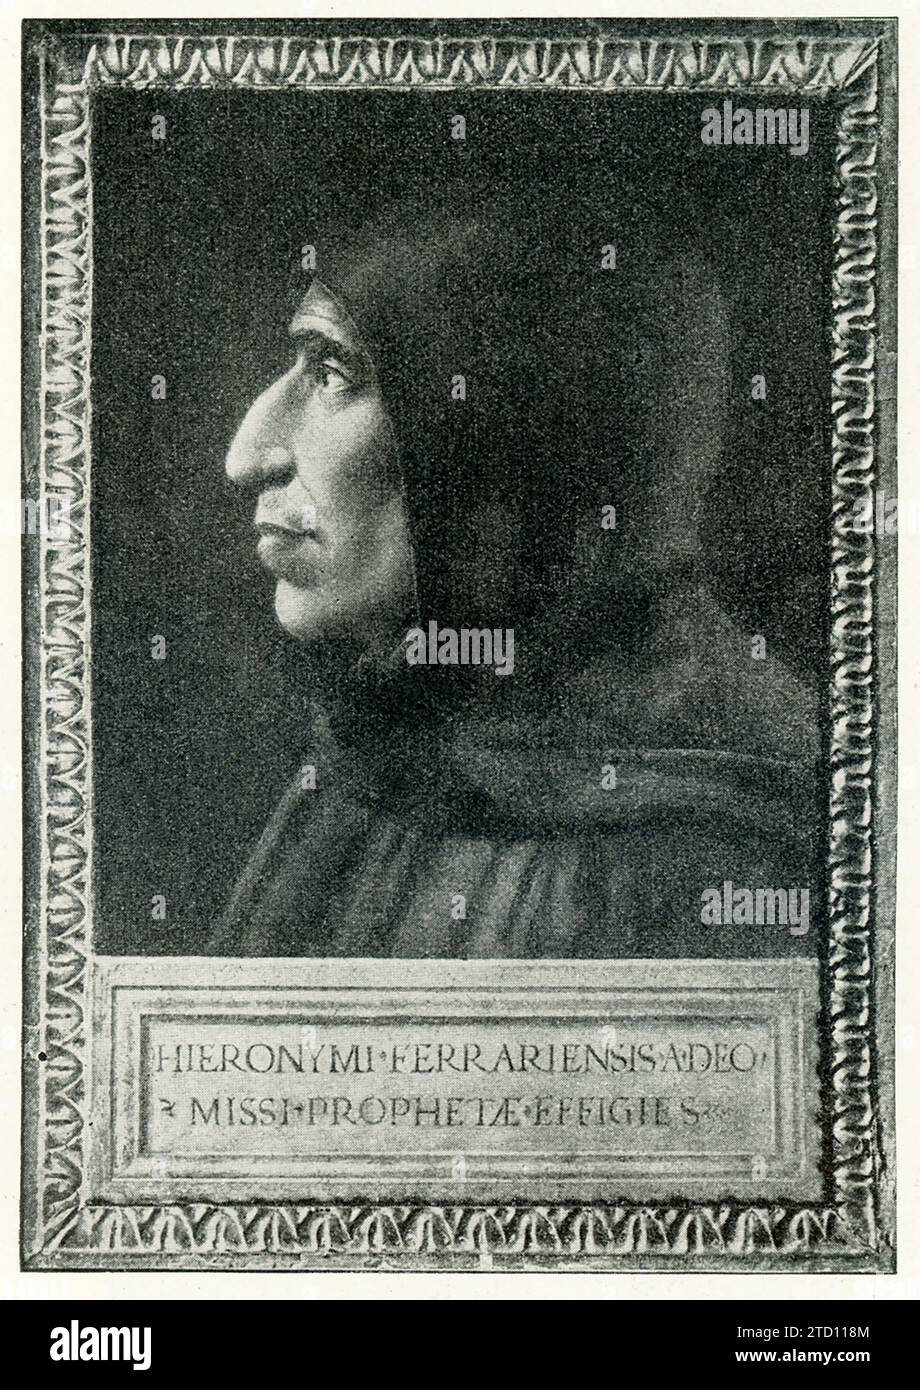 Ce portrait de Savonarole a été réalisé par FRA Bartolomeo. Girolamo Savonarola (1452-1498) était un frère dominicain italien ascétique de Ferrare et un prédicateur actif dans la Florence de la Renaissance. Il est devenu connu pour ses prophéties de gloire civique, son plaidoyer en faveur de la destruction de l'art et de la culture laïques, et ses appels au renouveau chrétien. FRA Bartolomeo (1472-1517) était un peintre italien de la Renaissance, spécialiste de sujets religieux. Le portrait se trouve dans le cloître de Saint-Marc à Florence, en Italie. Banque D'Images